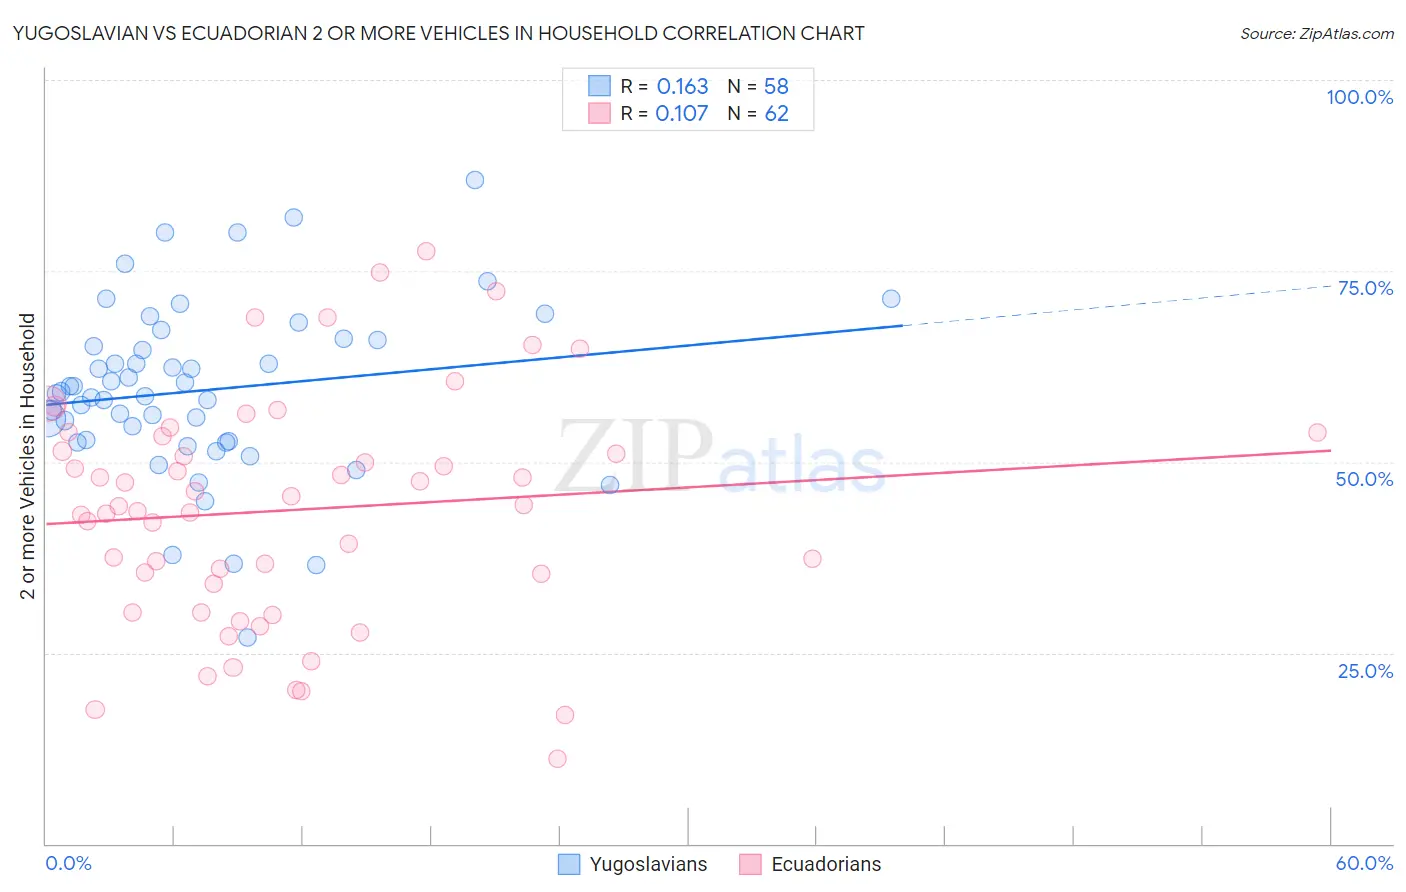 Yugoslavian vs Ecuadorian 2 or more Vehicles in Household